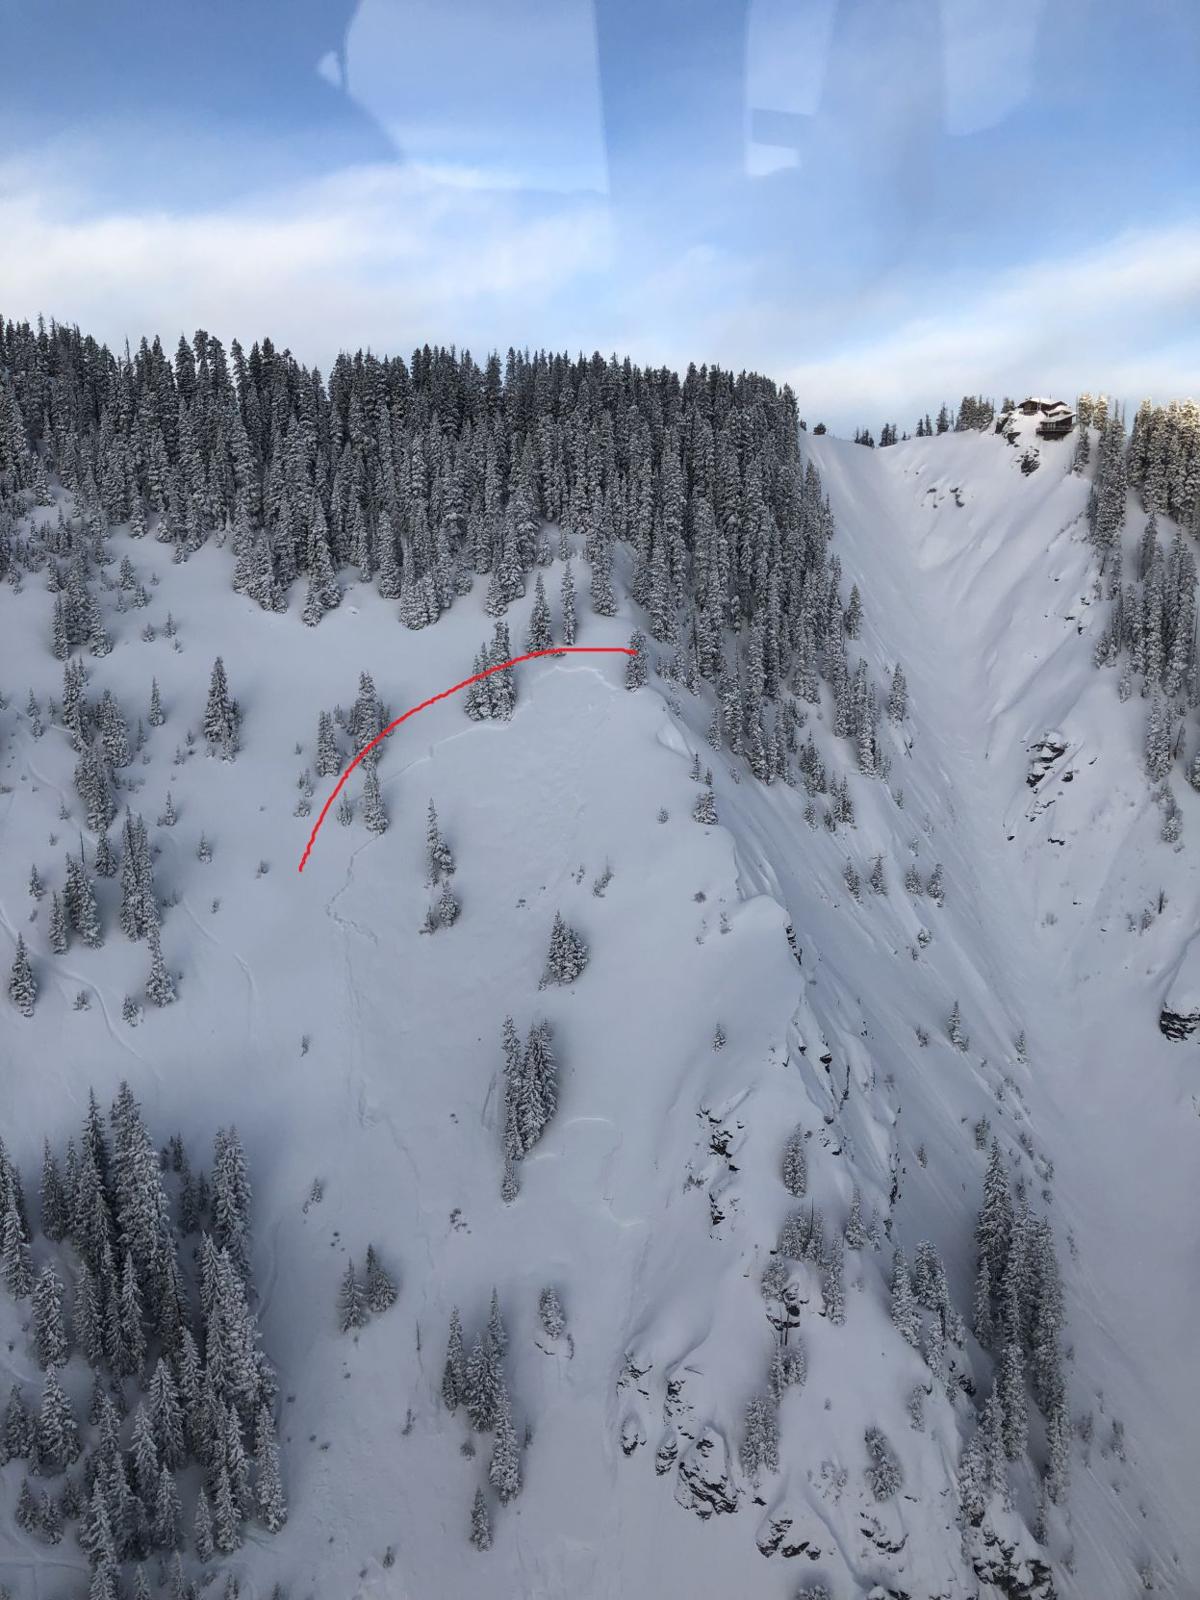 Third skier in four days dies in Colorado avalanche